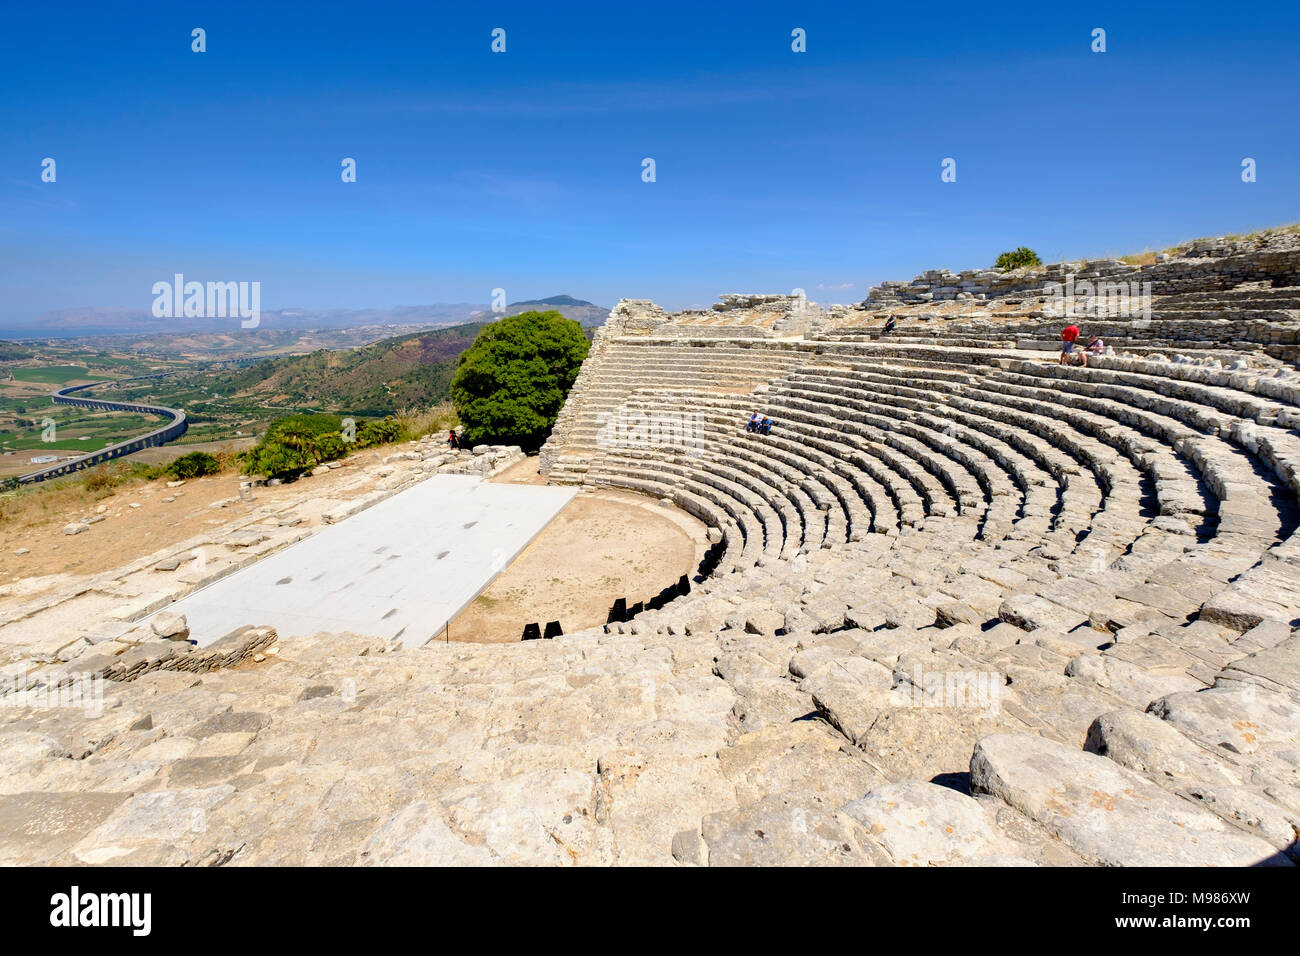 Teatro, Griechische Tempelanlage von Segesta Segesta, Trapani, Provinz Sizilien, Italien Foto de stock